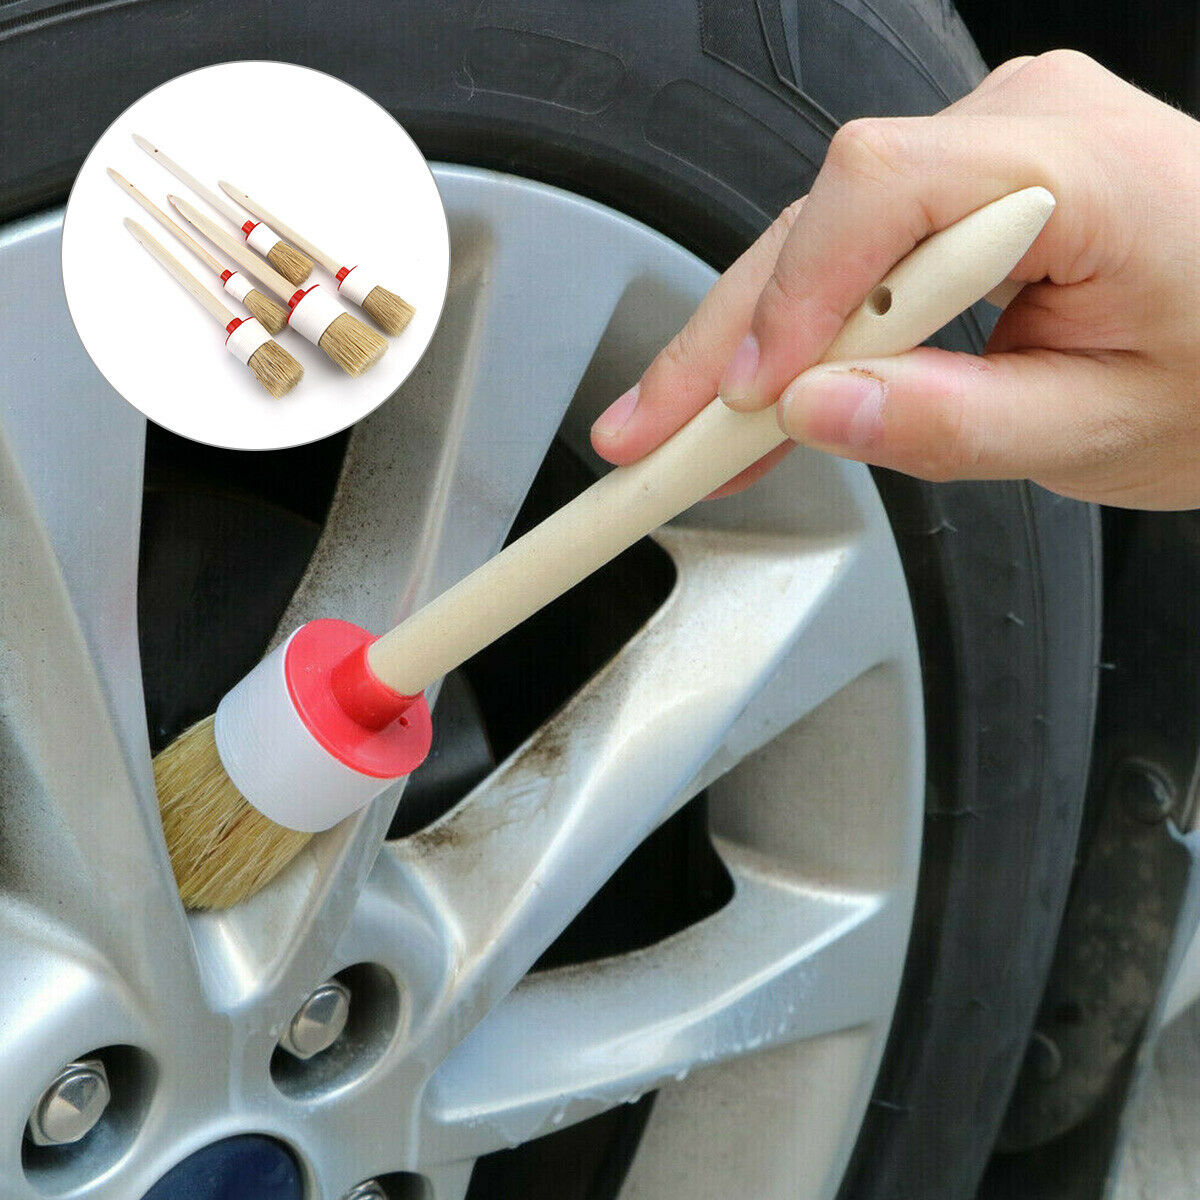 Car Interior Cleaning Tools -5pcs